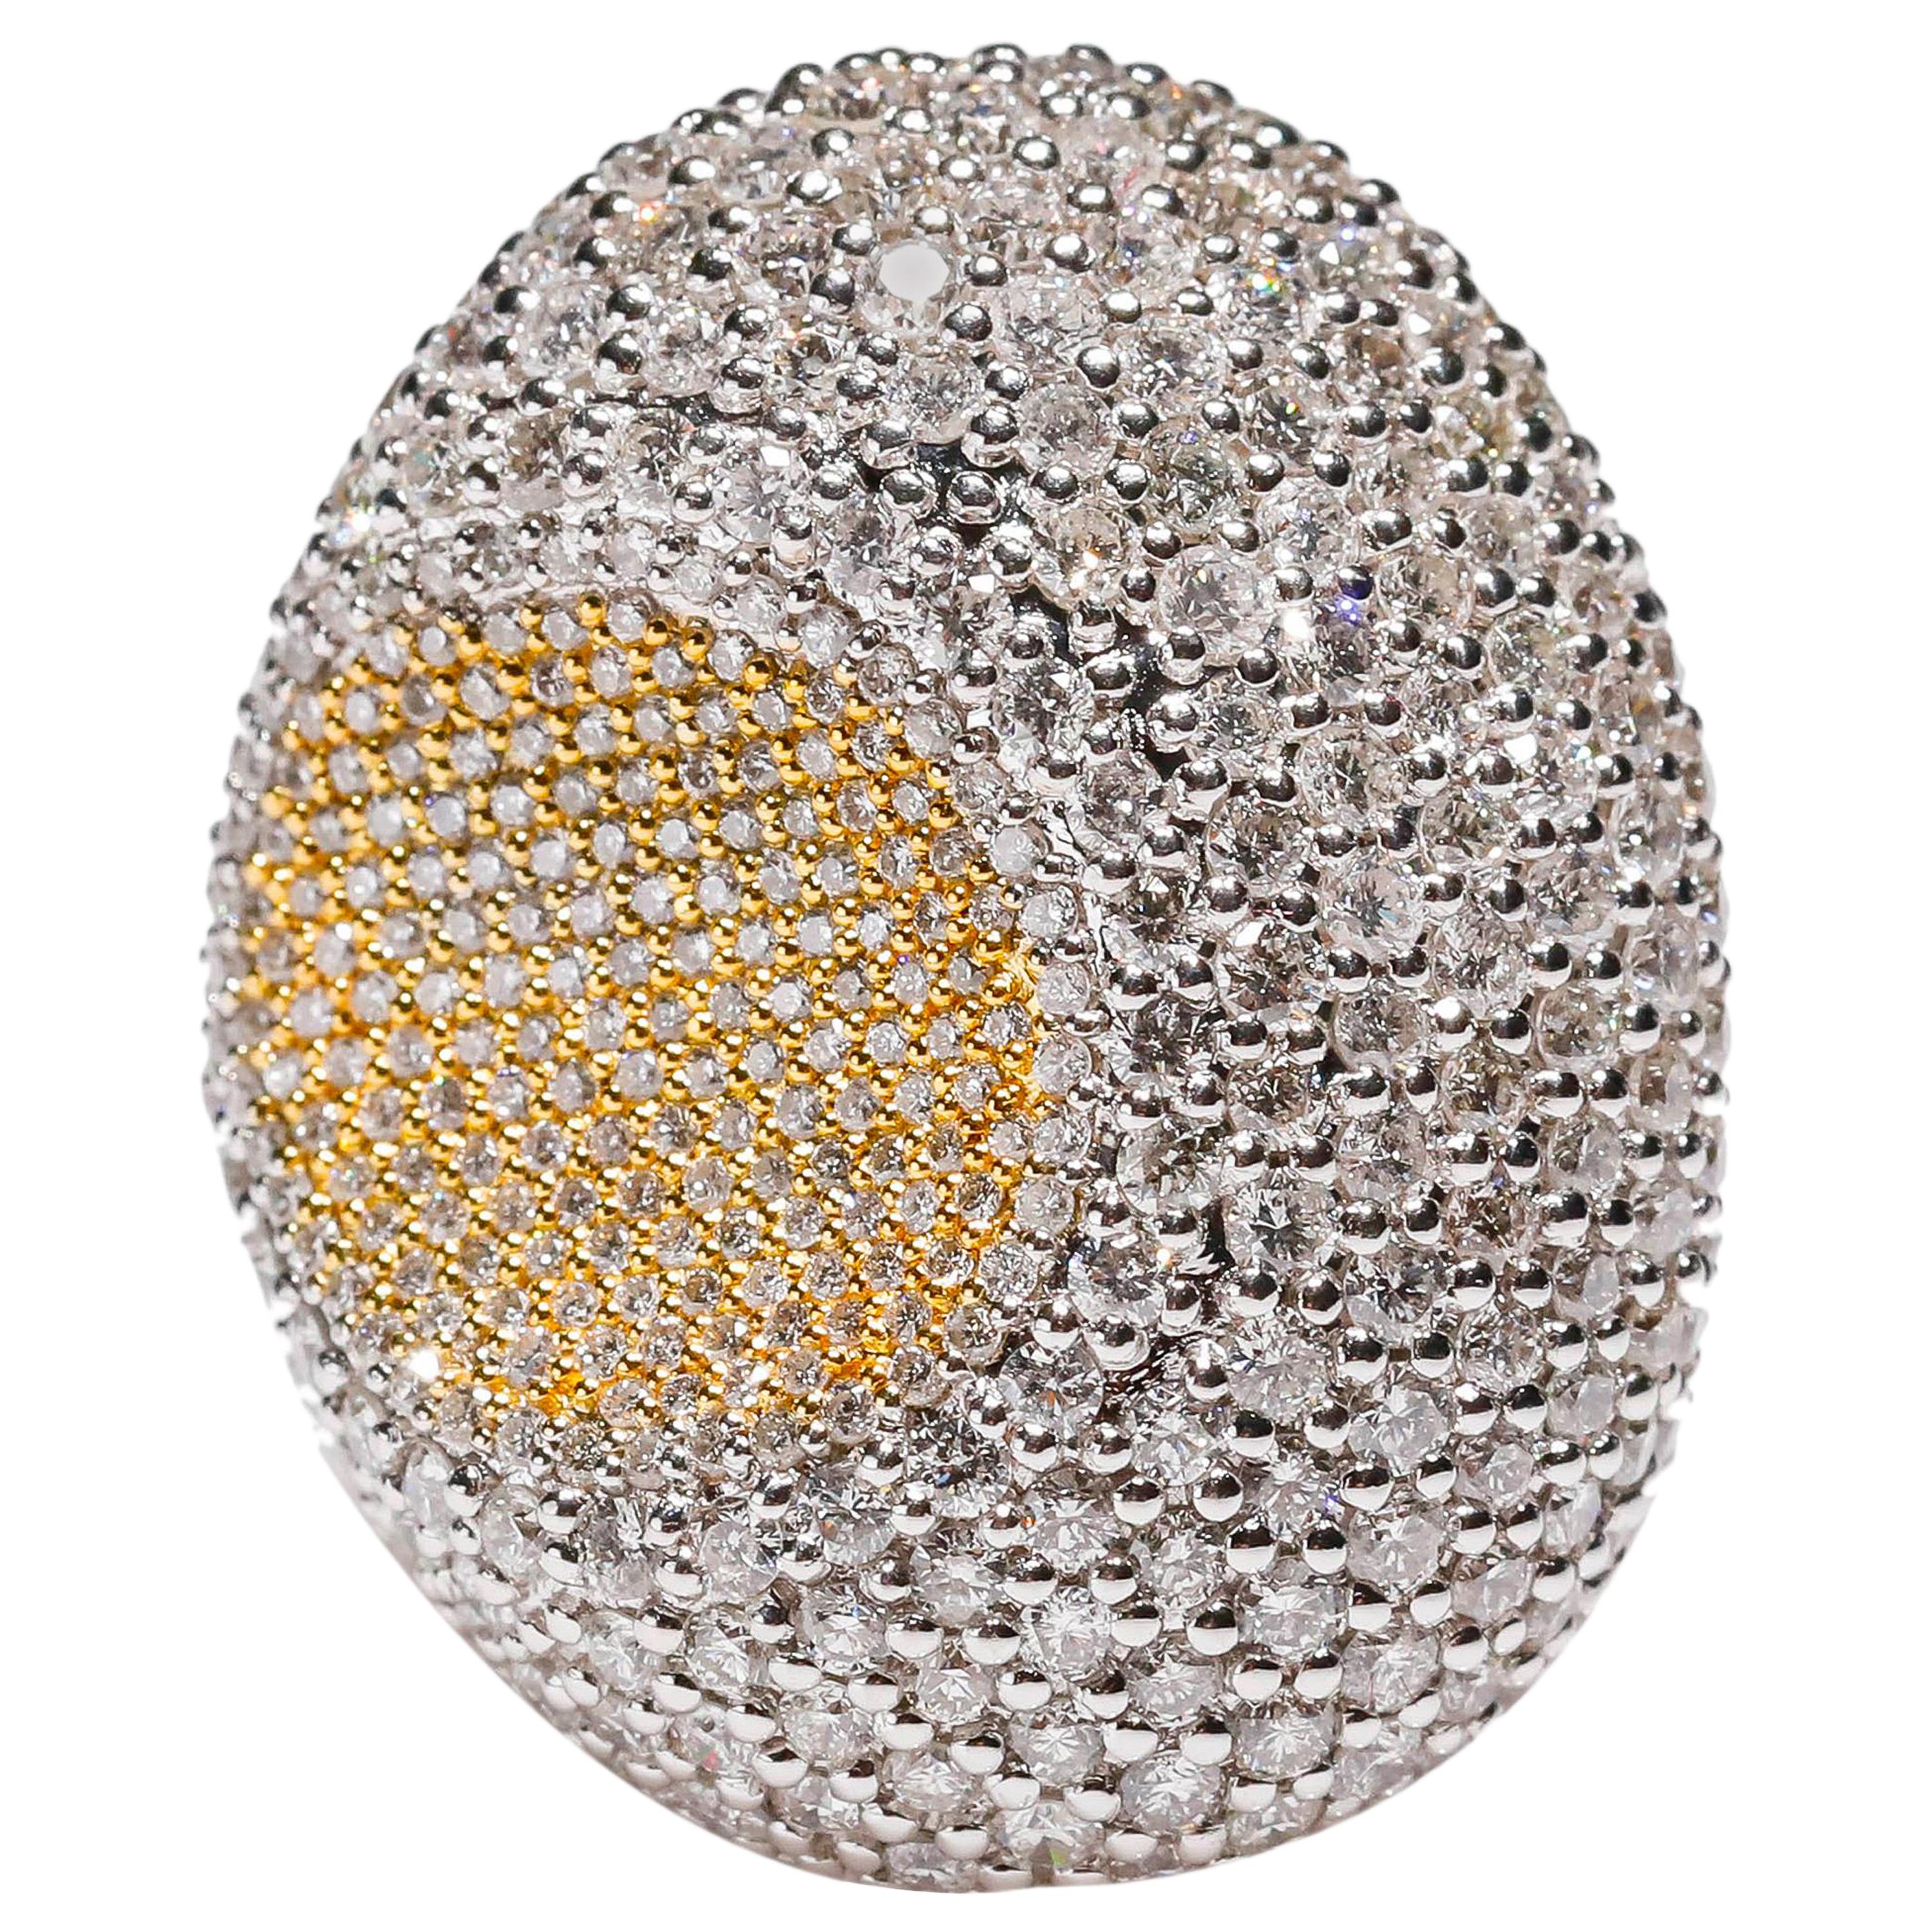 18 Karat Weißgold 4,44 Karat Weißer Rundschliff Pave Diamant Cocktail Ring

Gefertigt in 18 kt Weißgold, dieses einzigartige Design zeigt einen weißen Diamanten 4,44 TCW Round Cut Diamant, in einem massiven Weißgold, poliert zu einem brillanten